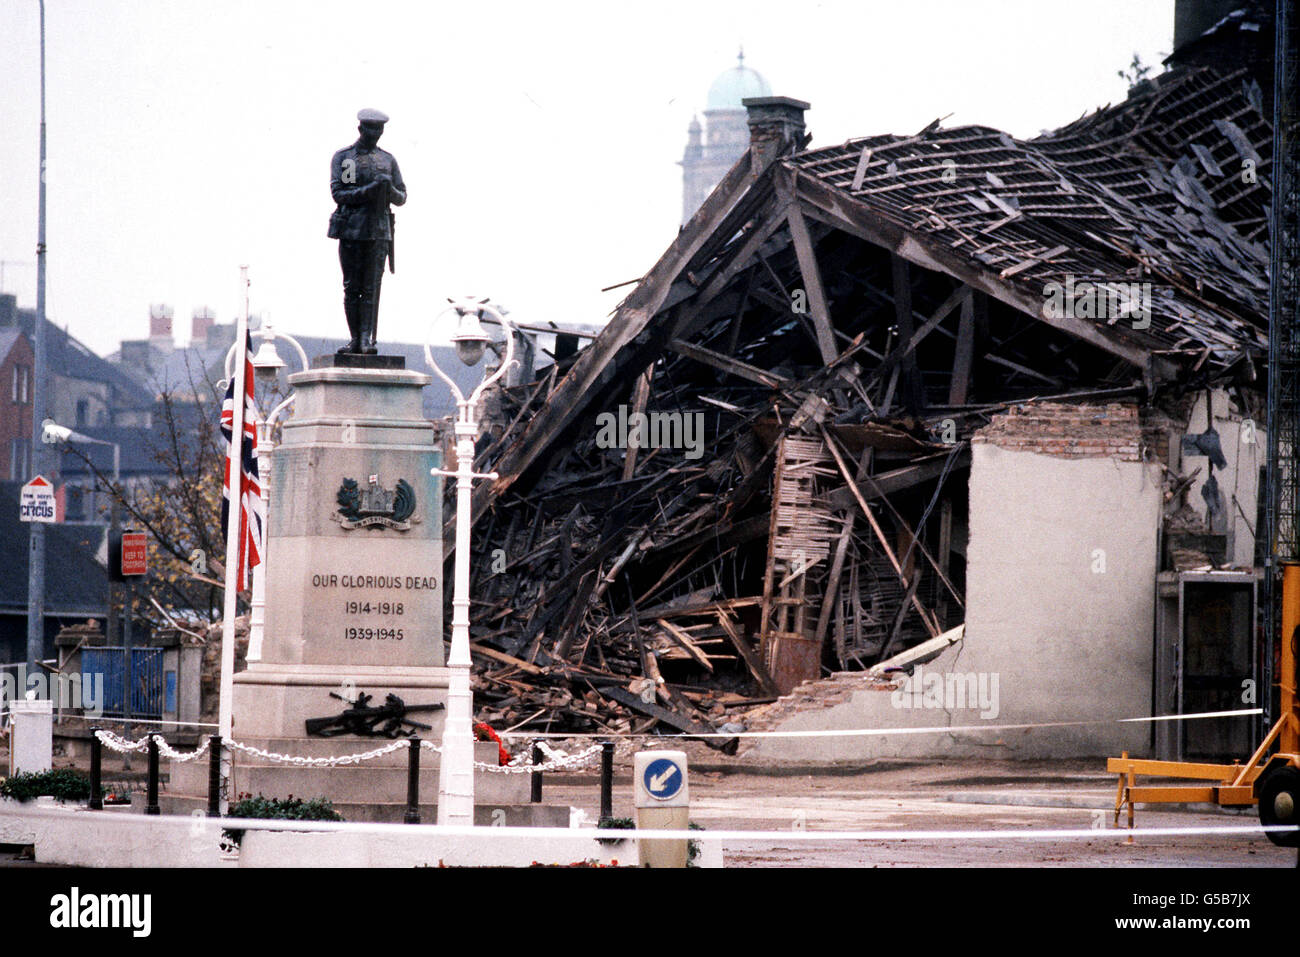 1987: El Cenotaph en Enniskillen con el centro comunitario devastado en el fondo. 11 personas murieron y más de 50 resultaron heridas en una explosión masiva de la bomba del IRA justo antes de que se llevase a cabo una ceremonia del día de la memoria en la ciudad de Enniskillen. * 16/07/02 el Cenotaph en Enniskillen con el centro comunitario devastado en el fondo.donde 11 personas murieron y más de 50 resultaron heridas en una explosión masiva de la bomba IRA justo antes de una ceremonia del día de recuerdo. El IRA se ha disculpado el viernes 16 de julio de 2002 por el asesinato de todos los 'no combatientes' que murieron durante su campaña de terror. Foto de stock